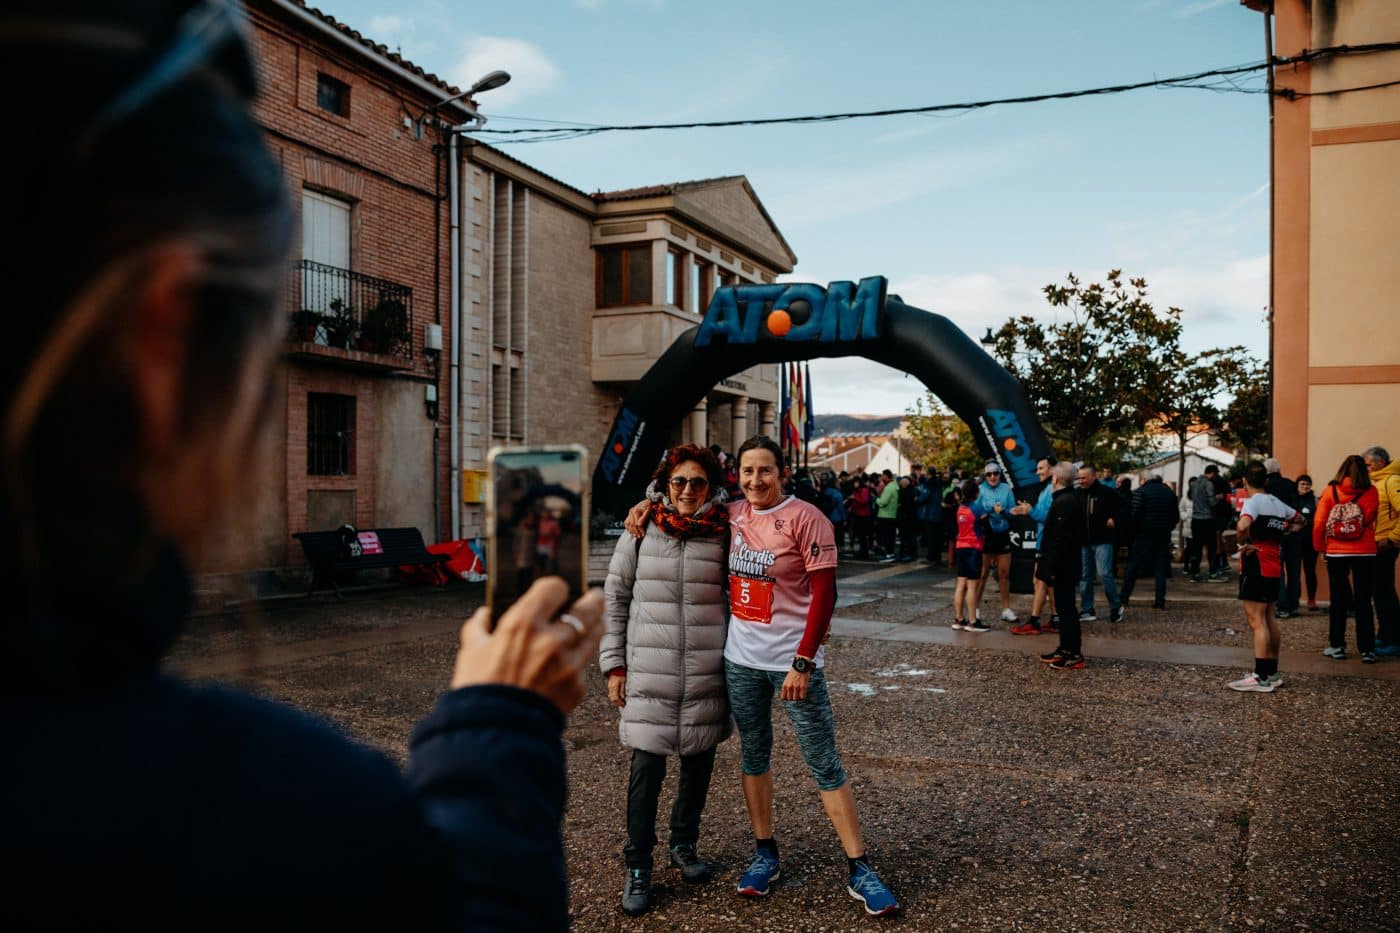 Corre, anda y 'claretea' en Cordovín: más de 200 personas disfrutan de Cordis Vinum 17